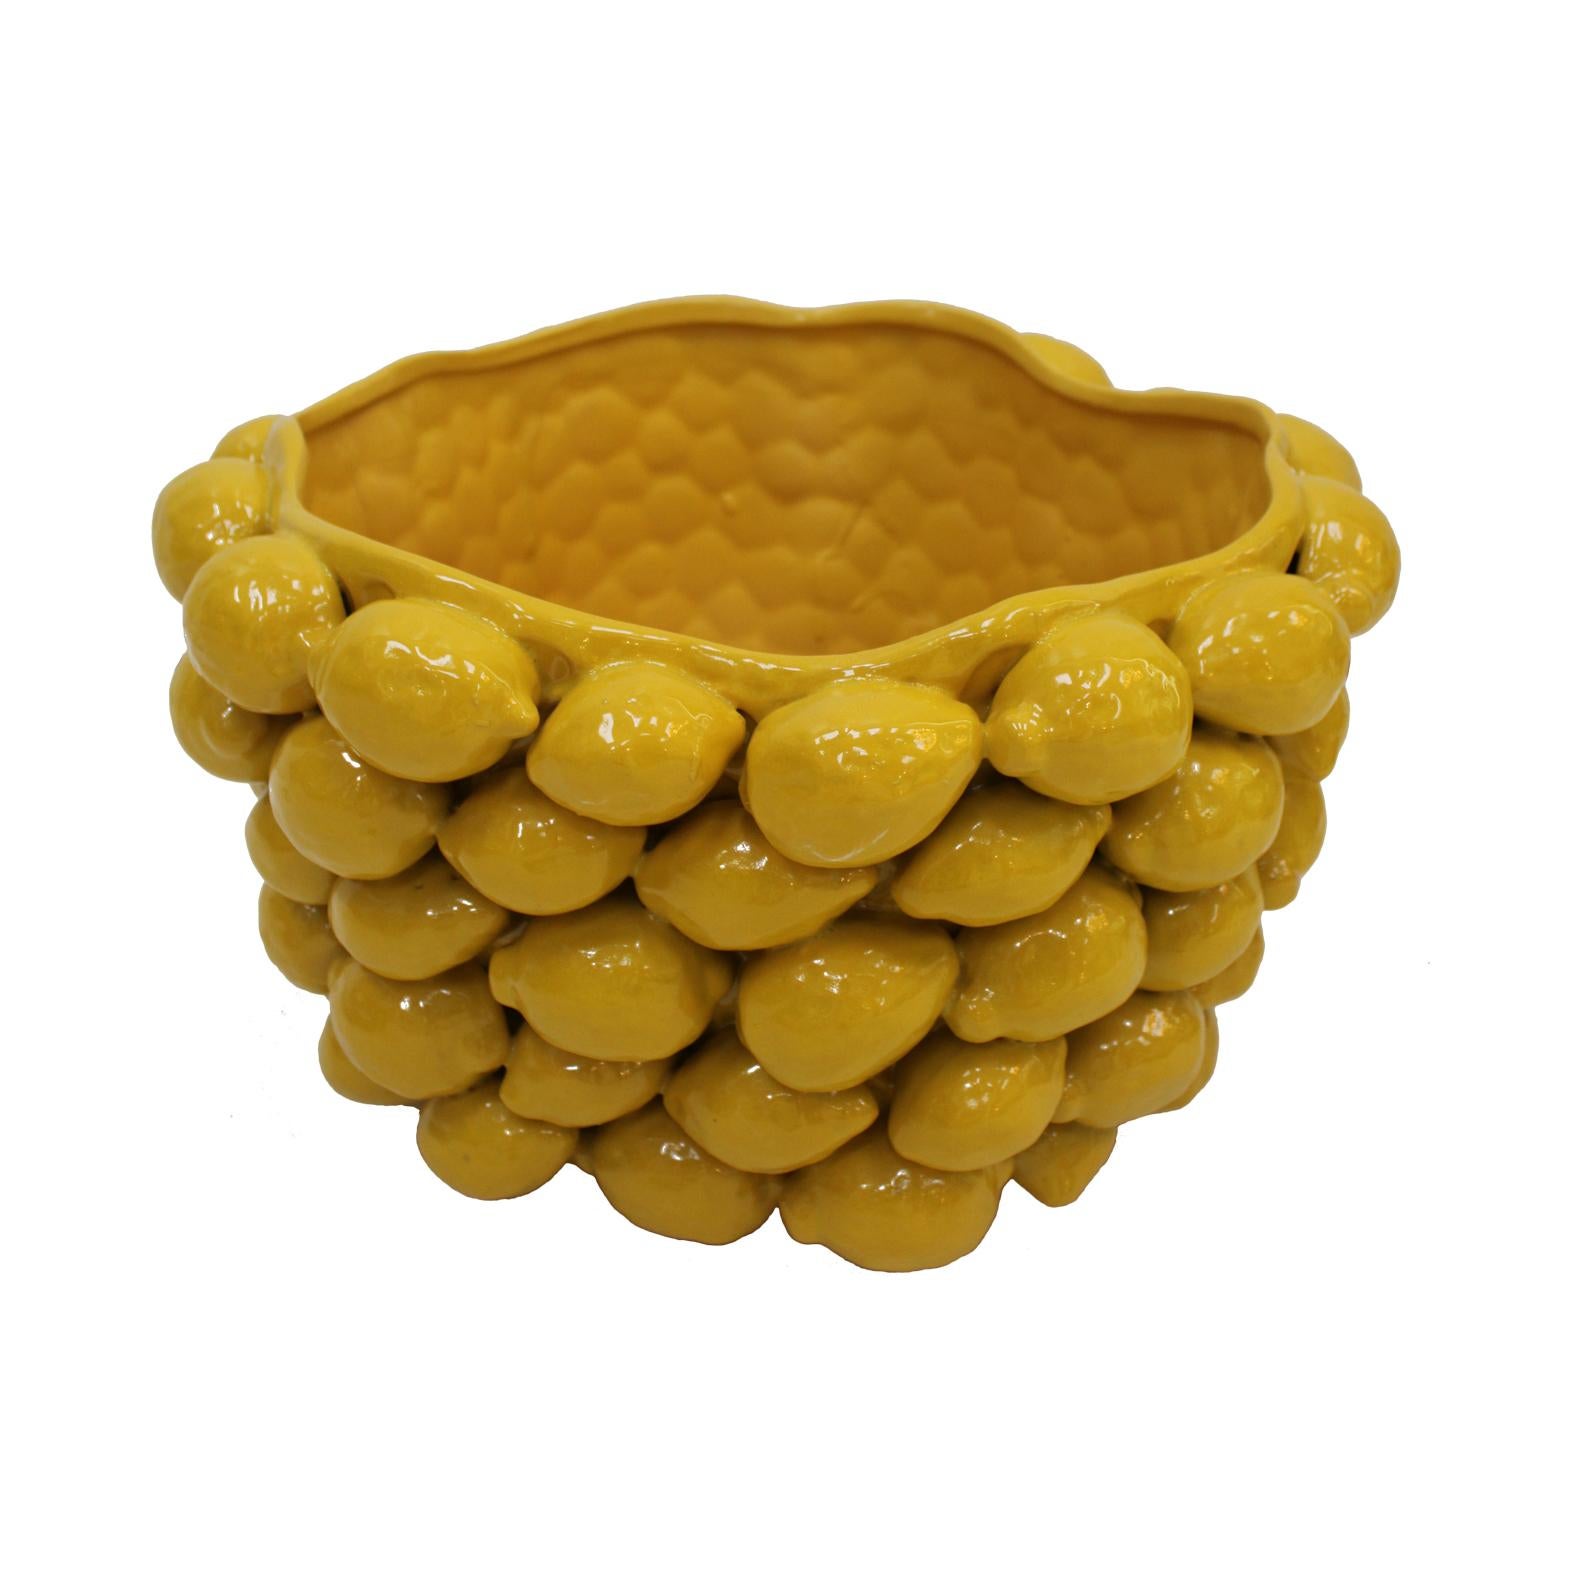 Vase d'art fabriqué à la main en céramique émaillée jaune avec des motifs de citron traditionnels du sud de l'Italie.
Vase d'art italien contemporain en stock.

Transformez votre espace de vie avec notre exquis vase contemporain en céramique